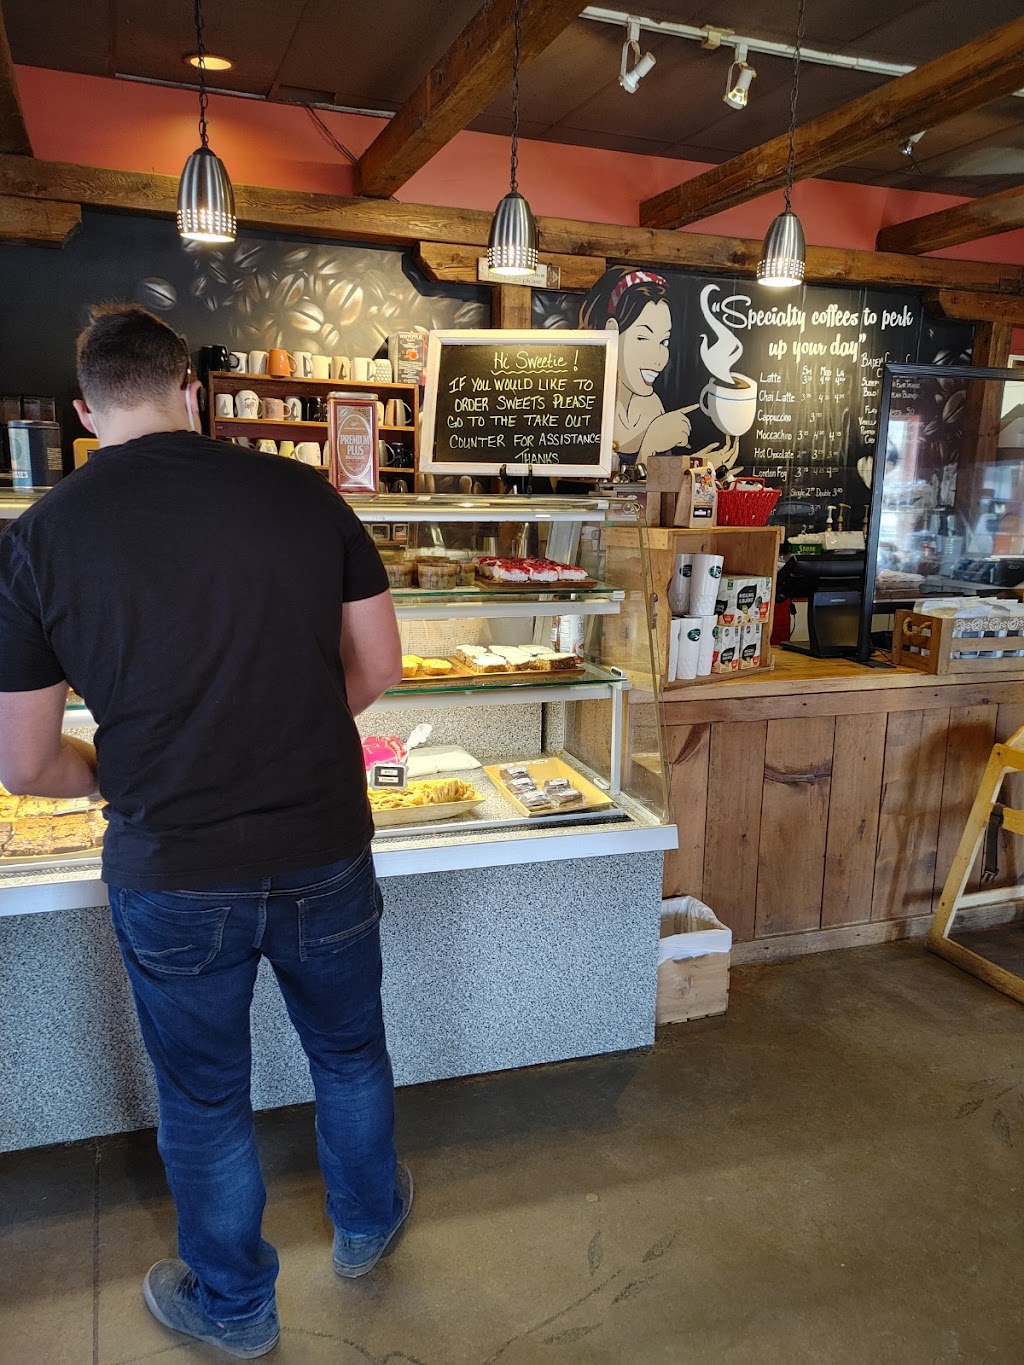 The European Bakery Café | bakery | 806 16th St E, Owen Sound, ON N4K 1Z1, Canada | 5193711260 OR +1 519-371-1260